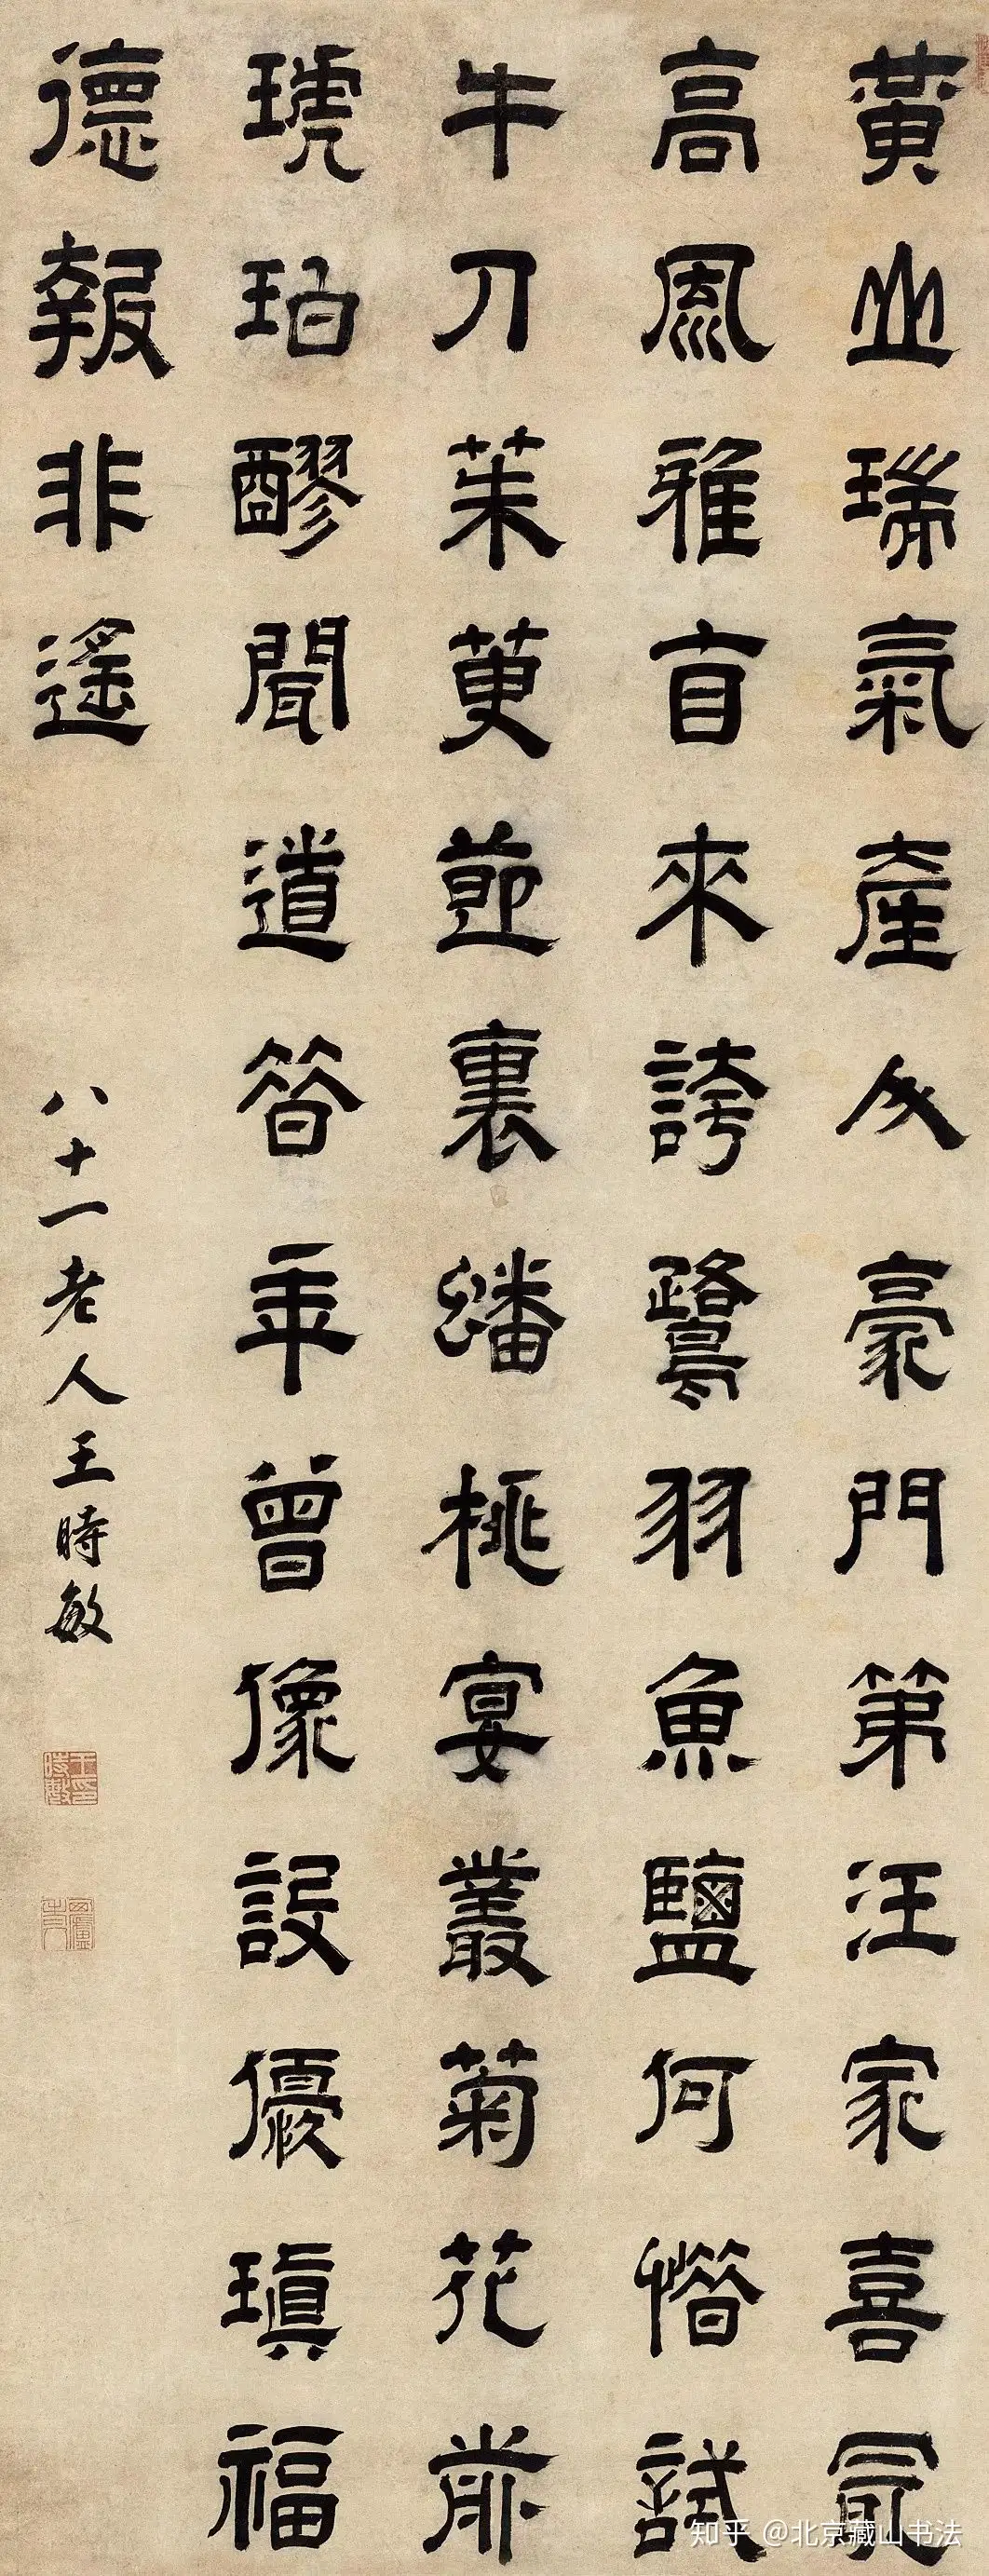 博物馆书法|中国国家博物馆典藏古代书法墨迹赏析- 知乎